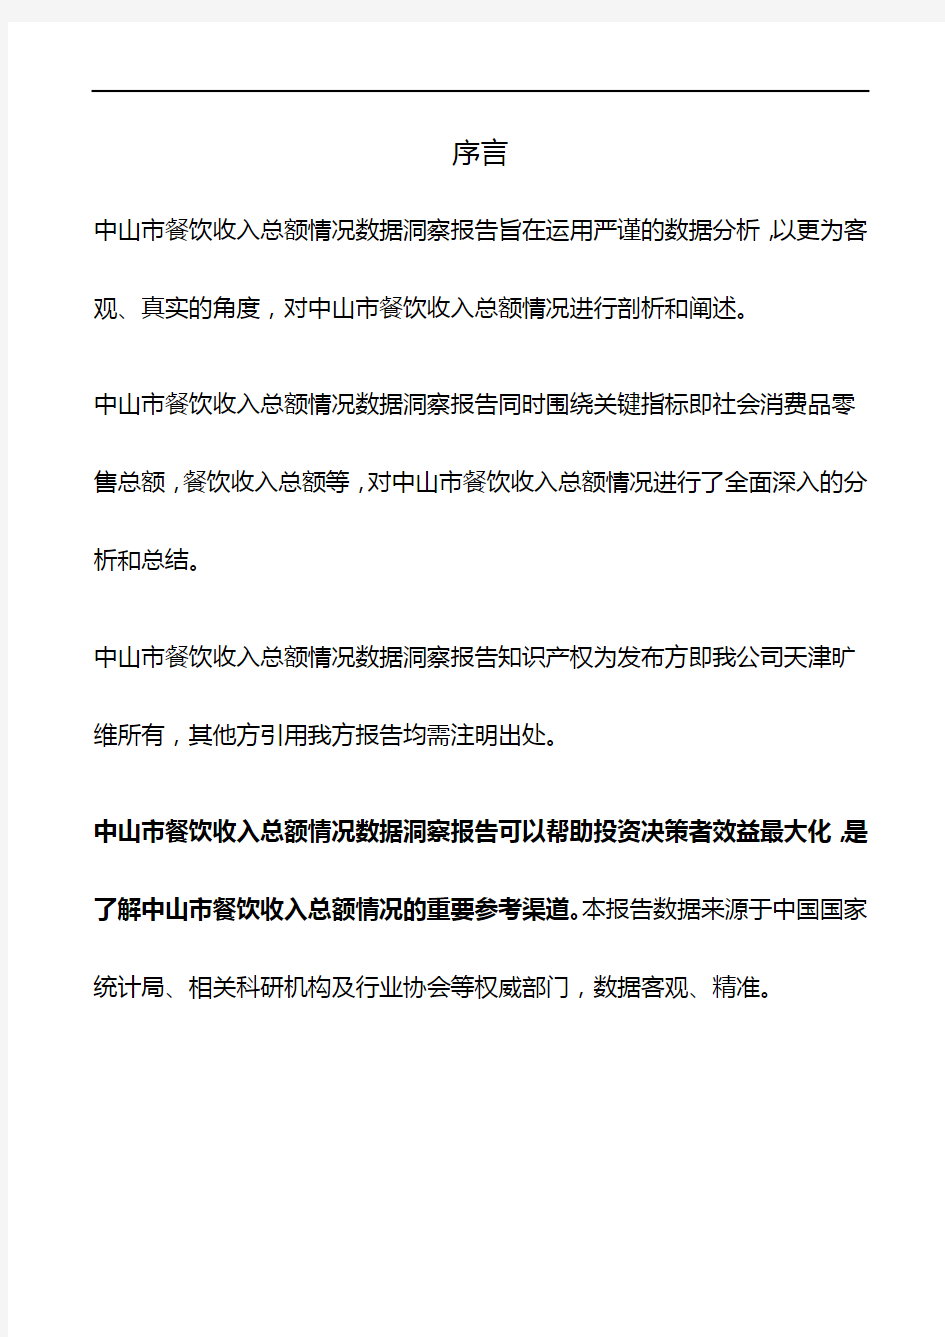 广东省中山市餐饮收入总额情况数据洞察报告2019版